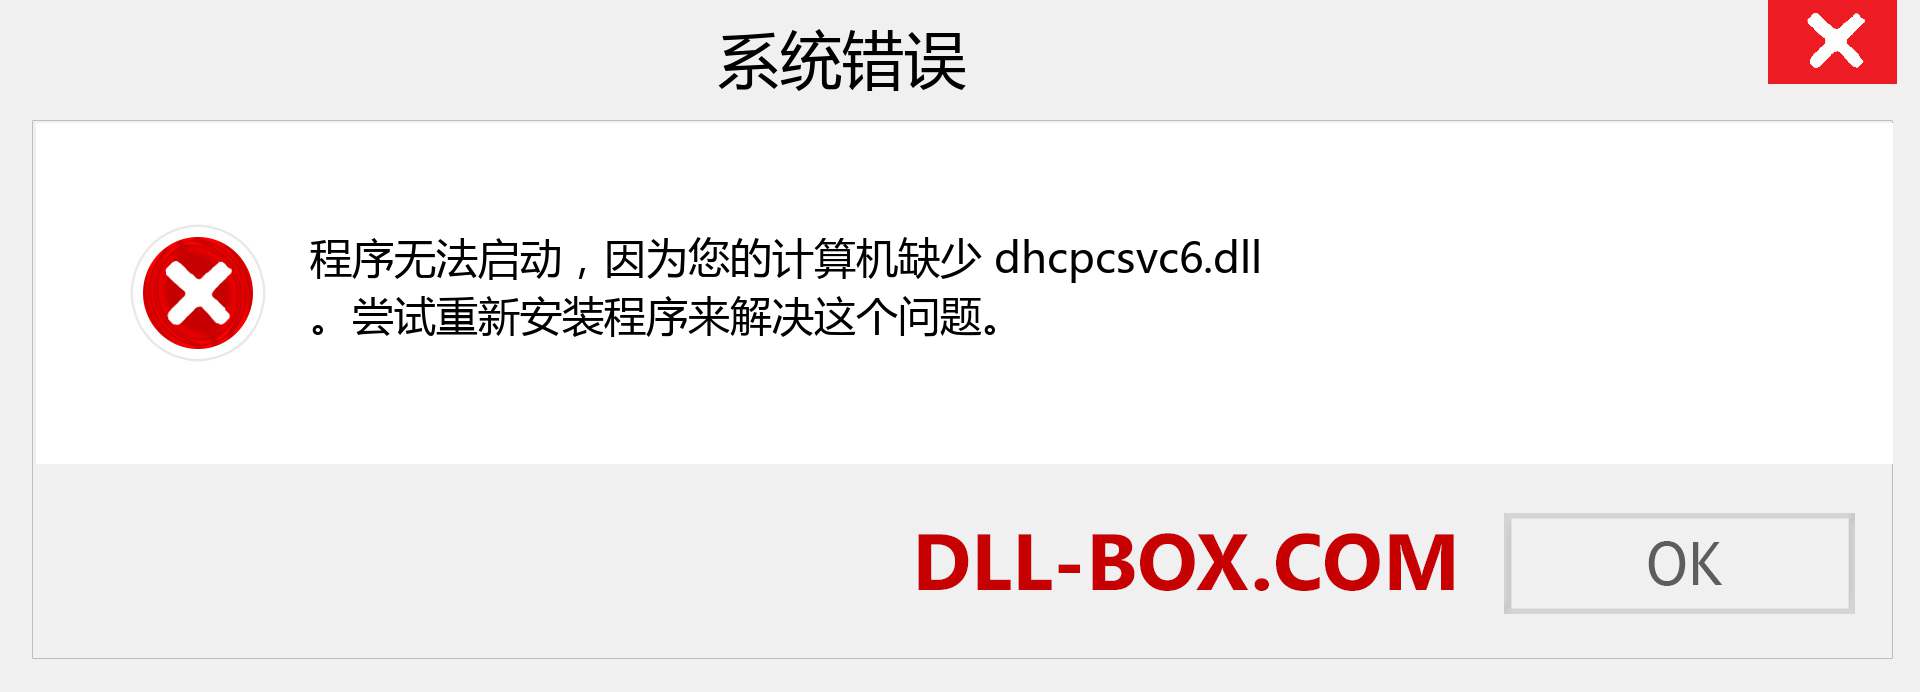 dhcpcsvc6.dll 文件丢失？。 适用于 Windows 7、8、10 的下载 - 修复 Windows、照片、图像上的 dhcpcsvc6 dll 丢失错误